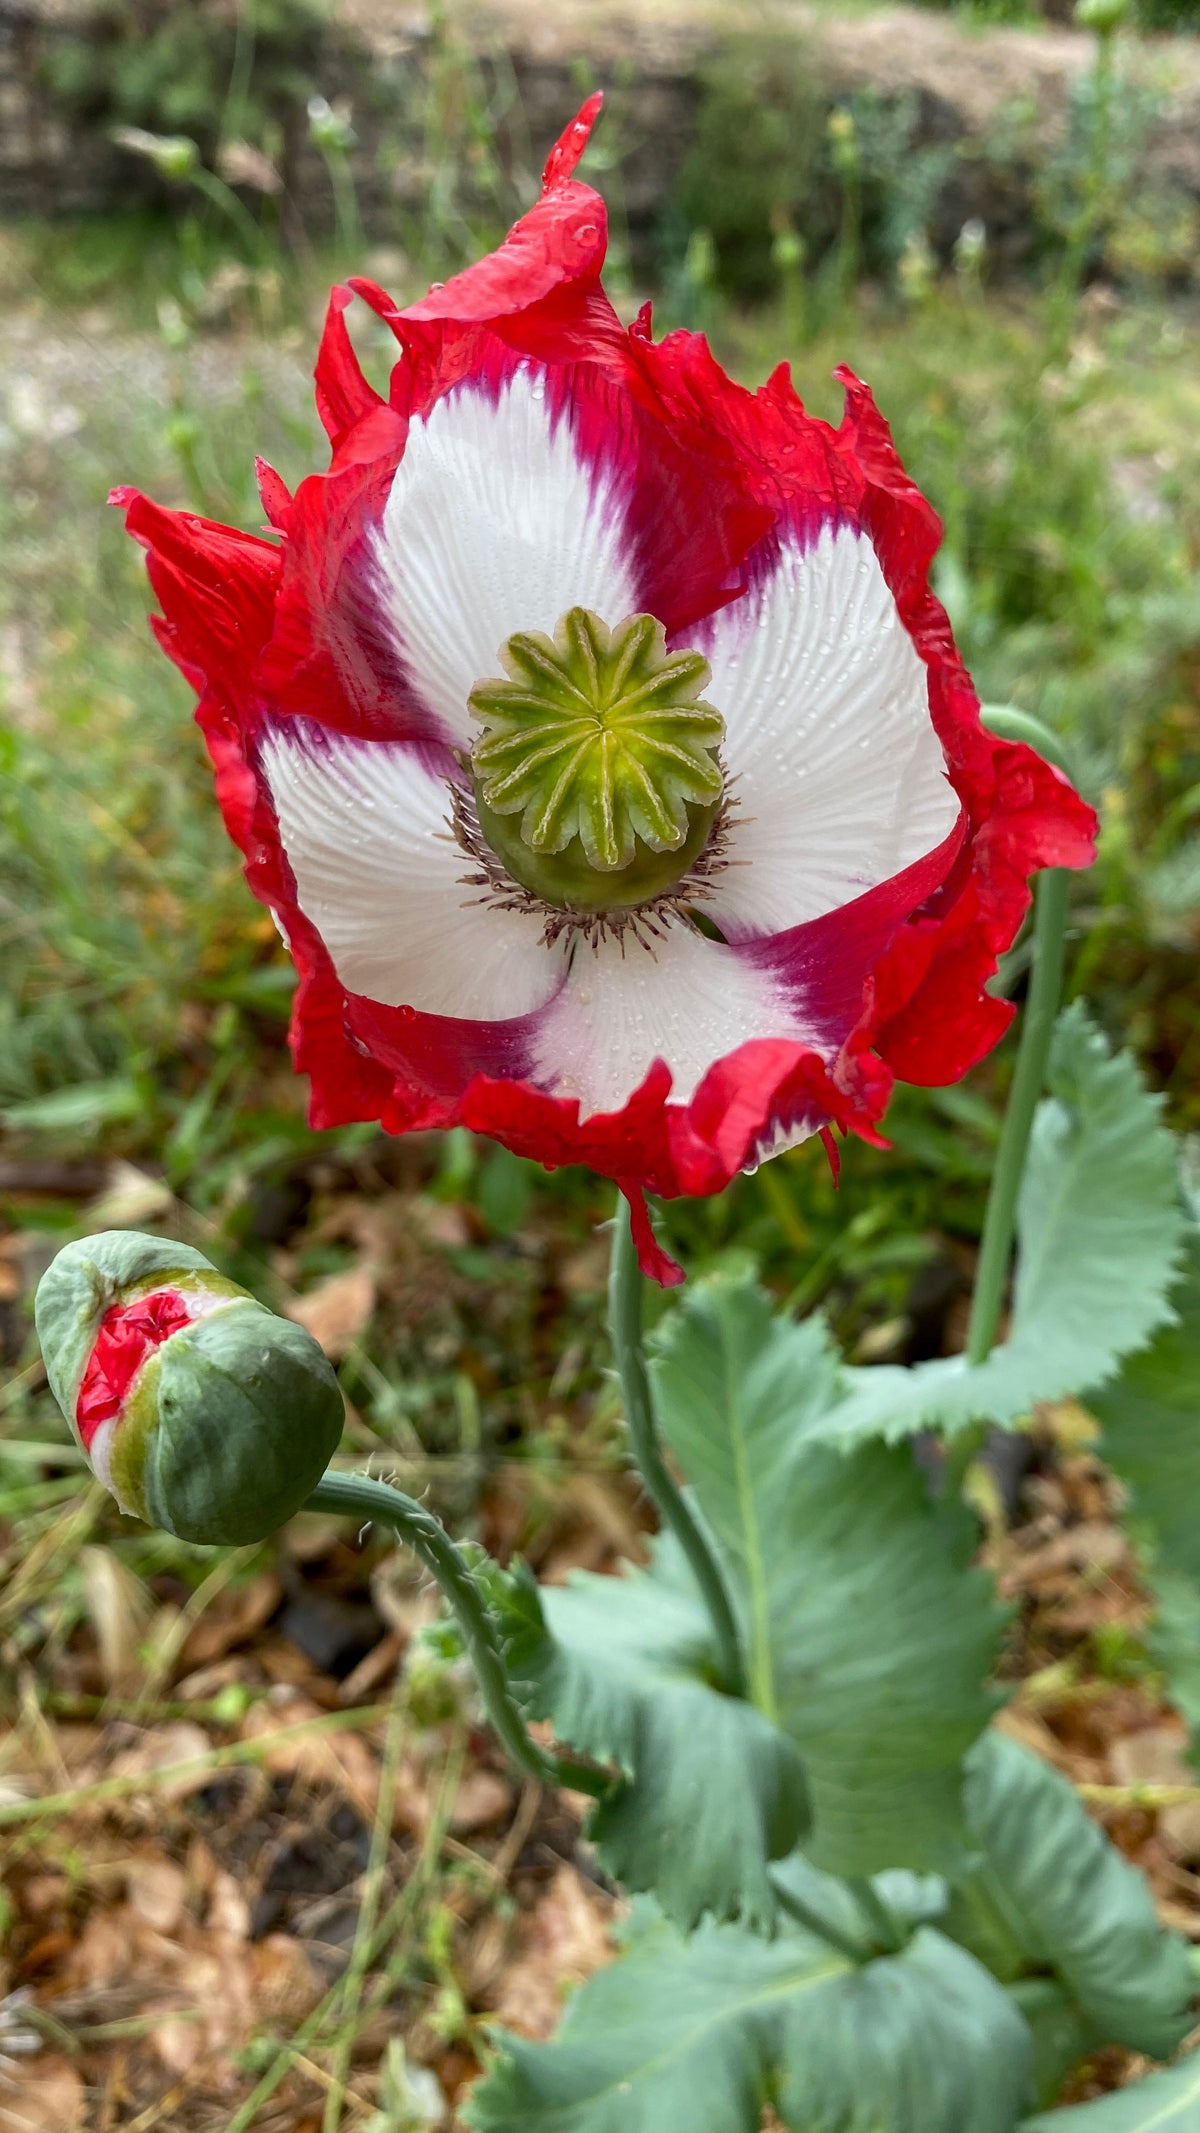 Danish Flag Poppy in Blossom Vertical Aspect Beautiful White Red Flower